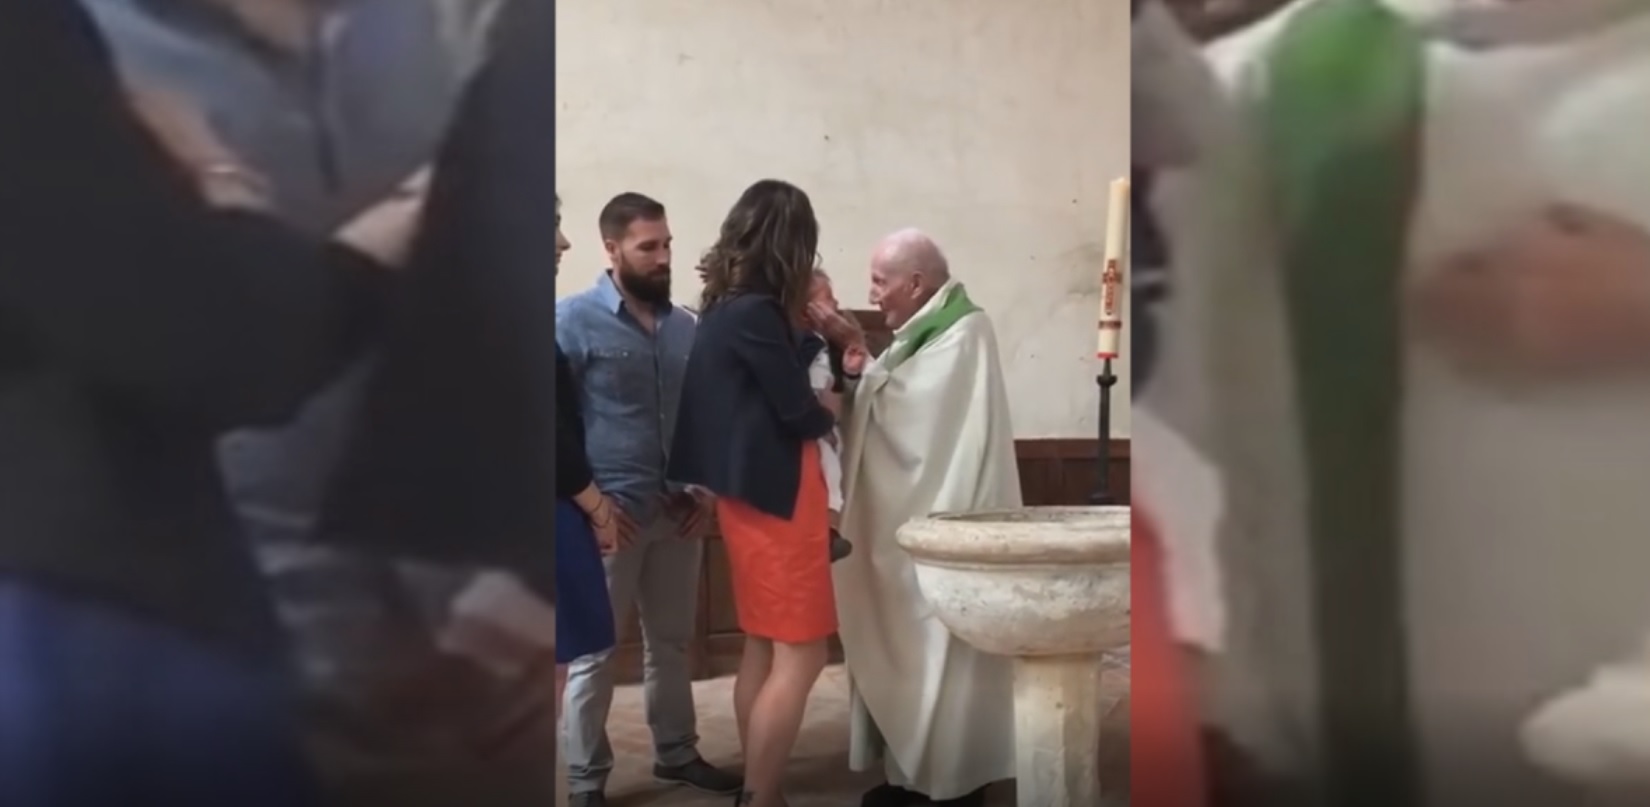 Bébé giflé par un prêtre